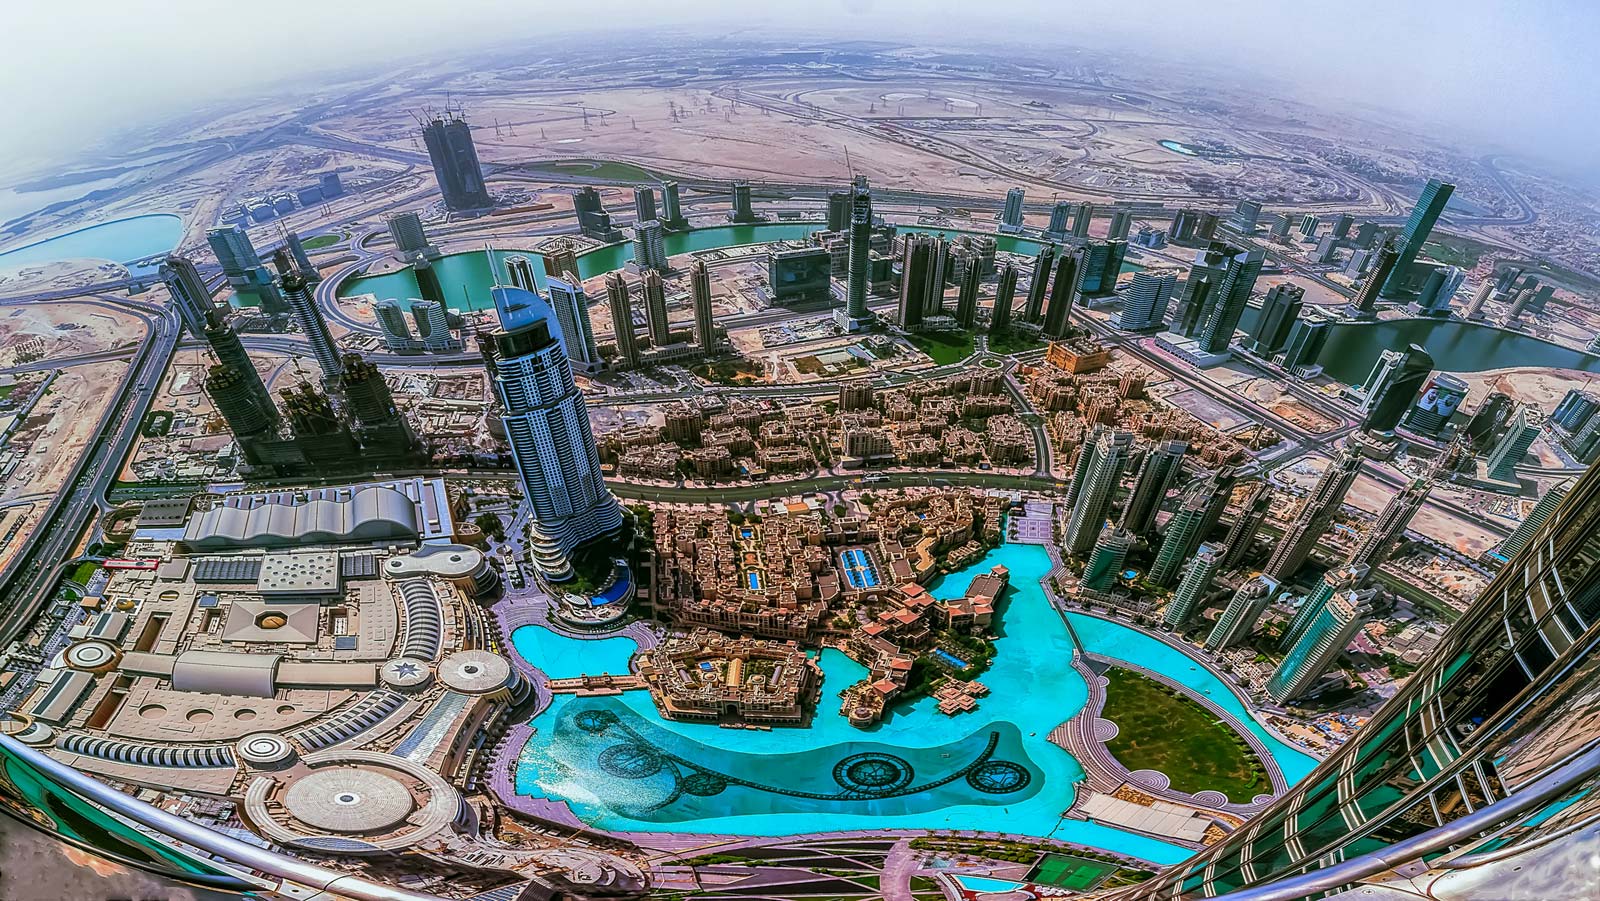 شرایط ویژه توریستی دبی : دبی، مقصد گردشگری هیجان انگیز برای توریست ها